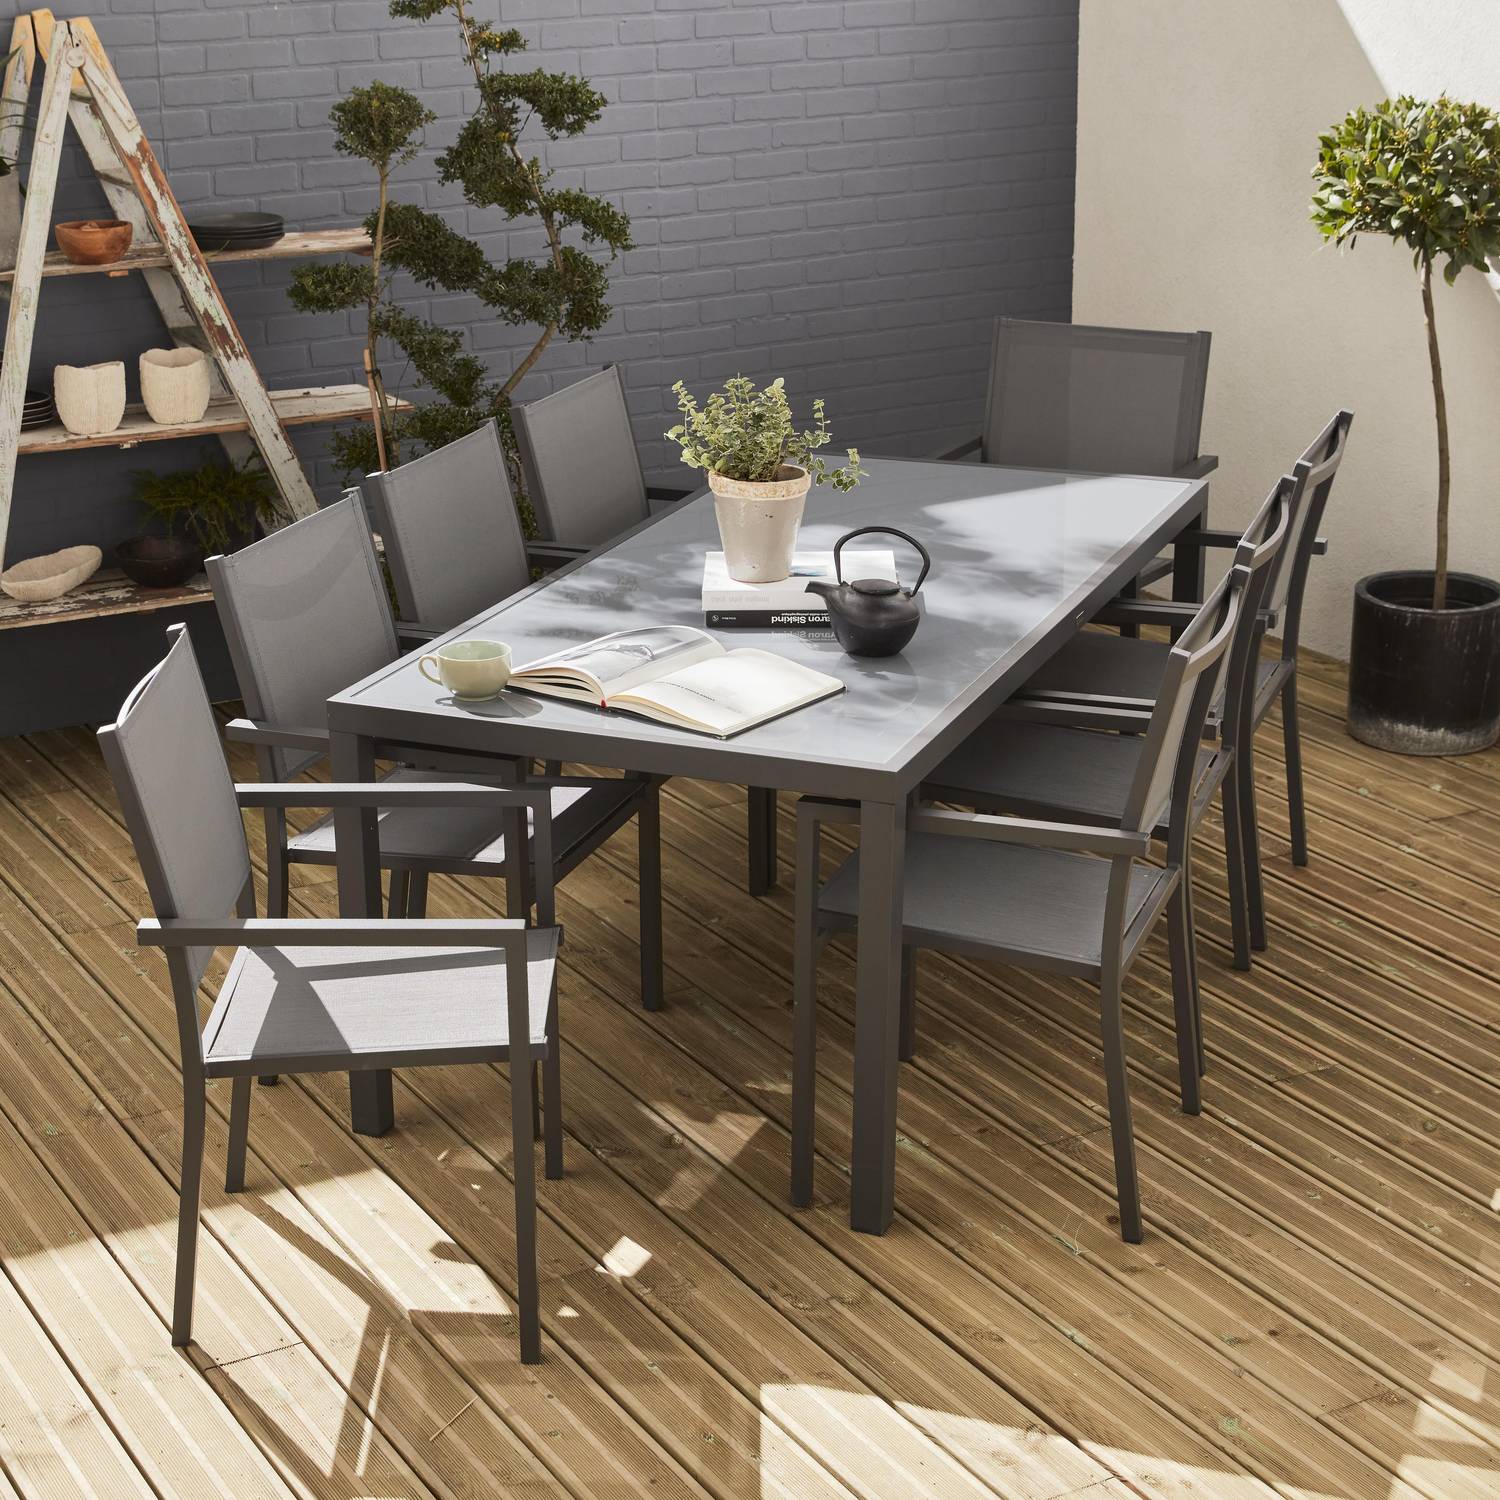 Salon de jardin en aluminium et textilène - Capua 180cm - Anthracite, gris - 8 places - 1 grande table rectangulaire, 8 fauteuils empilables Photo1